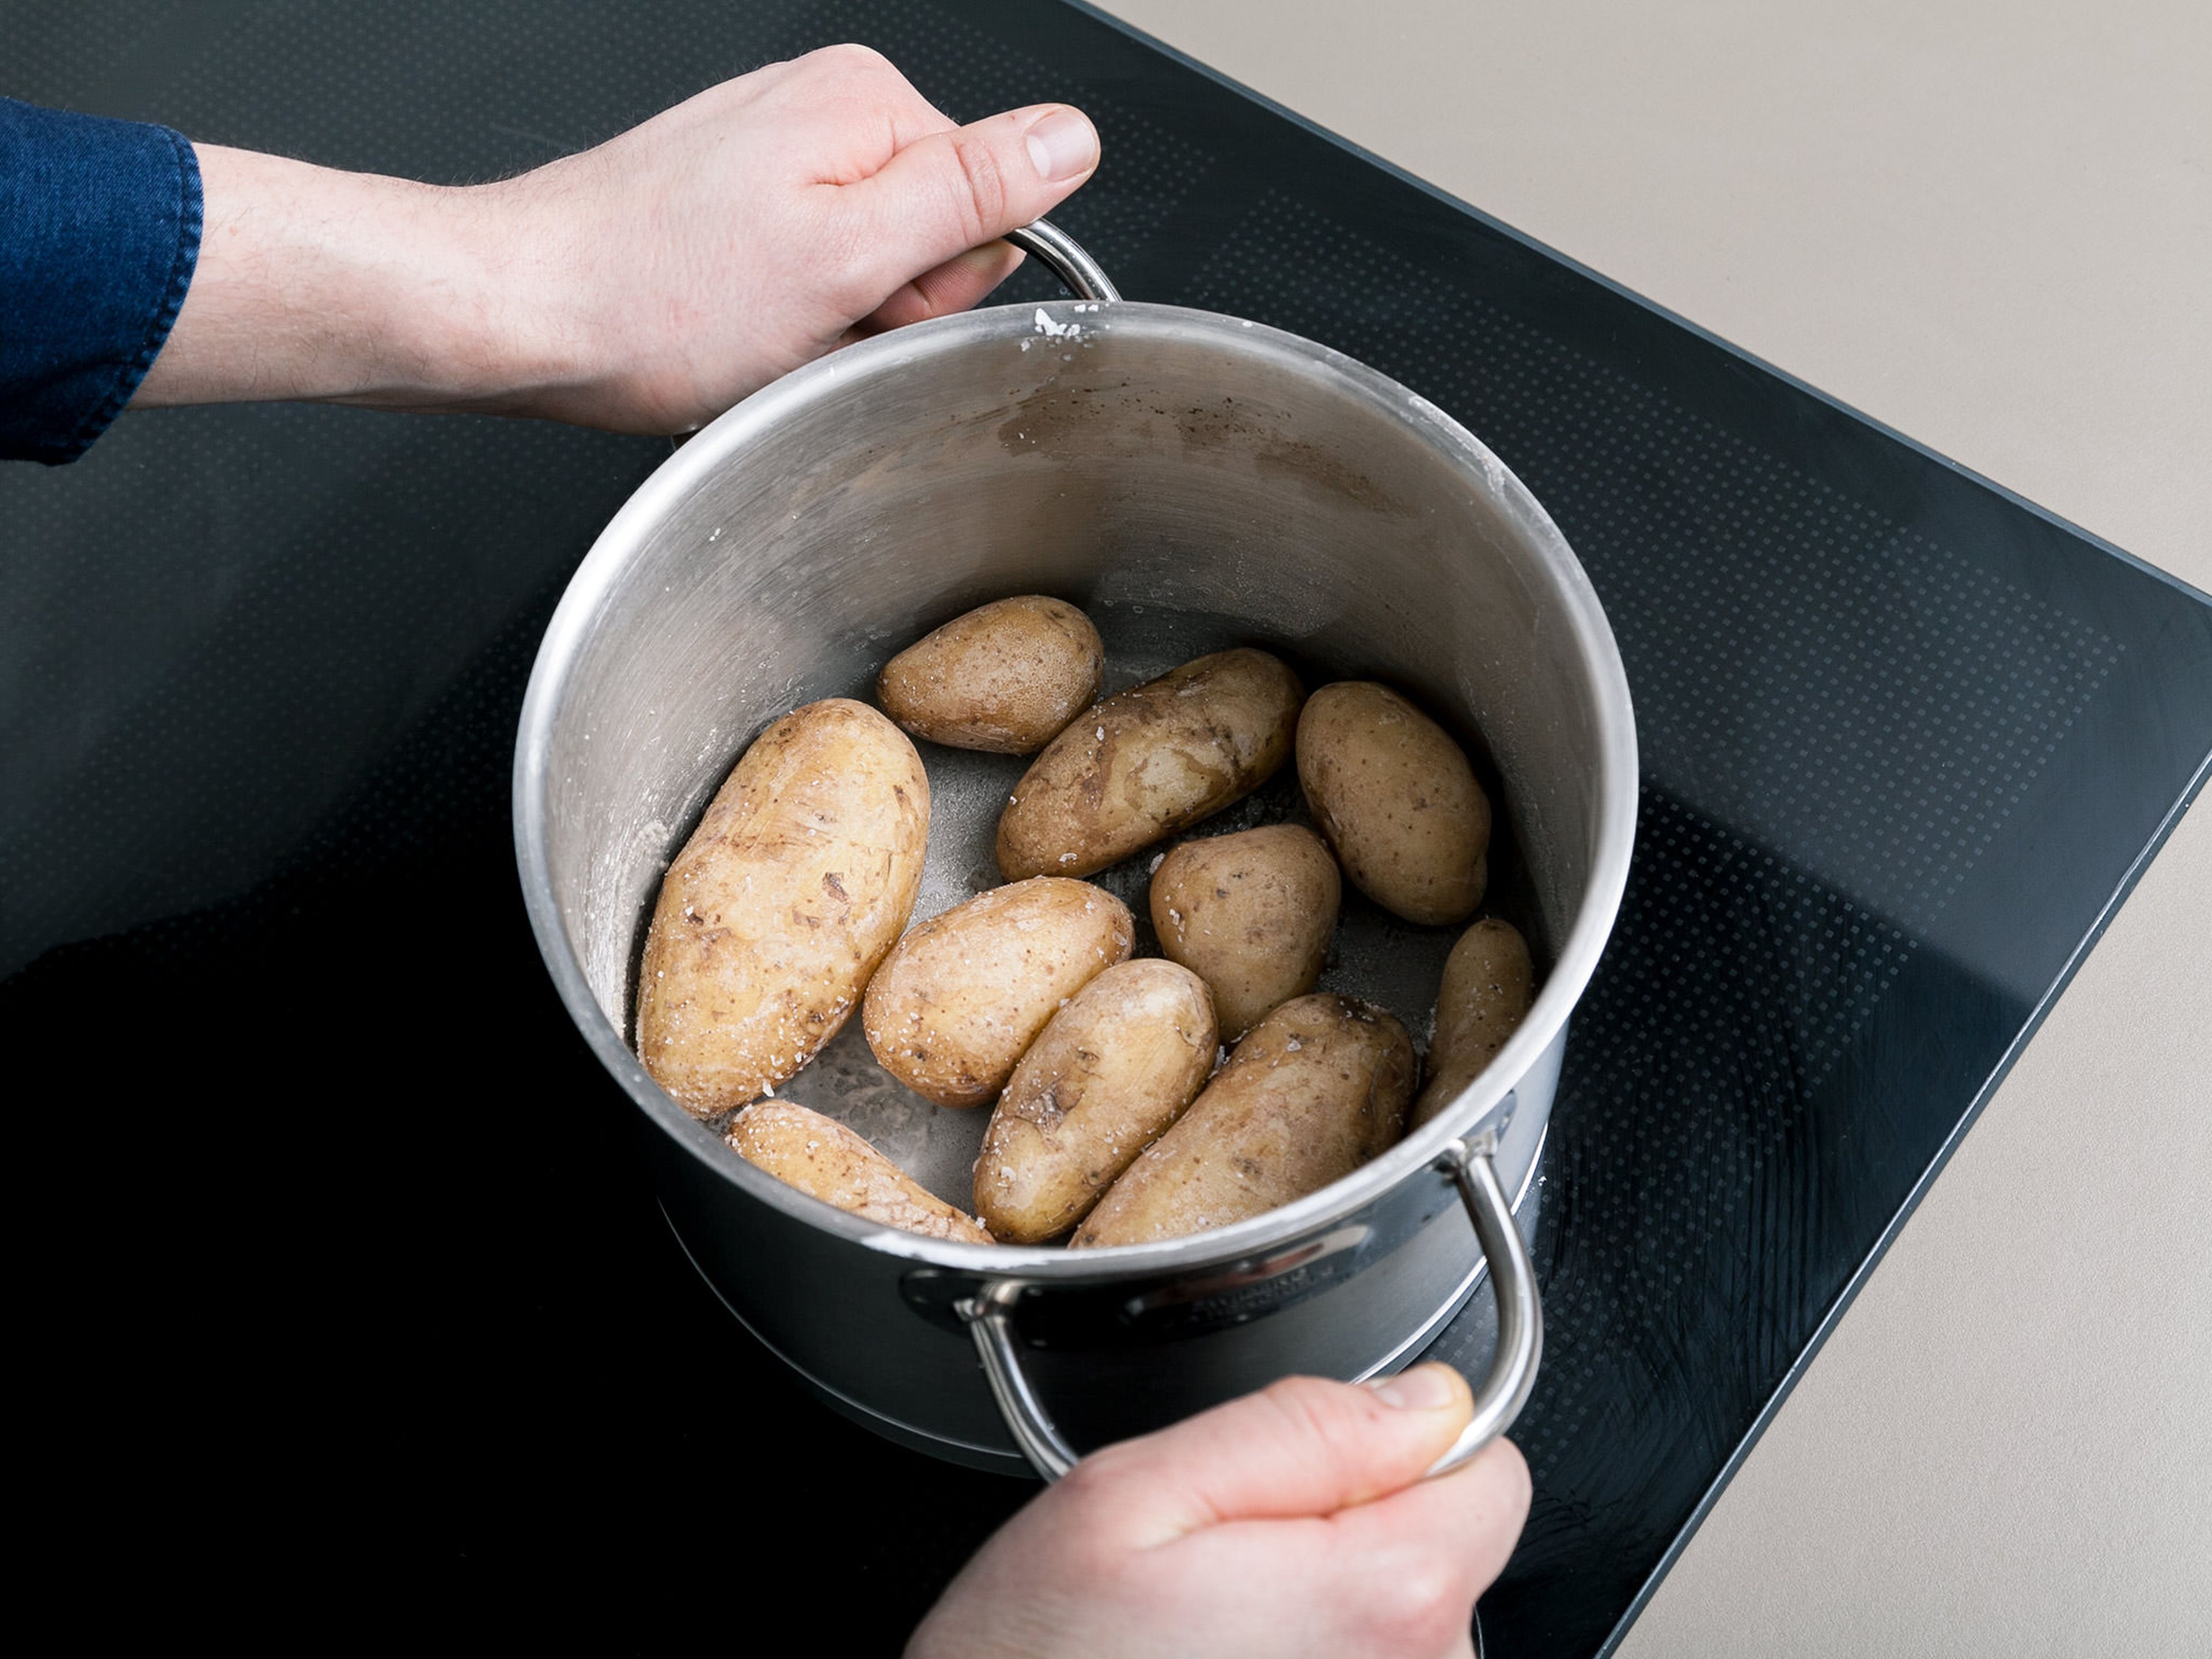 Das Wasser aus dem Topf fast vollständig abgießen, sodass noch ein kleiner Rest bleibt. Die Kartoffeln im Topf ohne Deckel erhitzen, bis das Wasser verdampft. Den Topf dabei ab und zu schwenken. Auf diese Weise bekommen die Kartoffeln ihre typische Salzkruste.